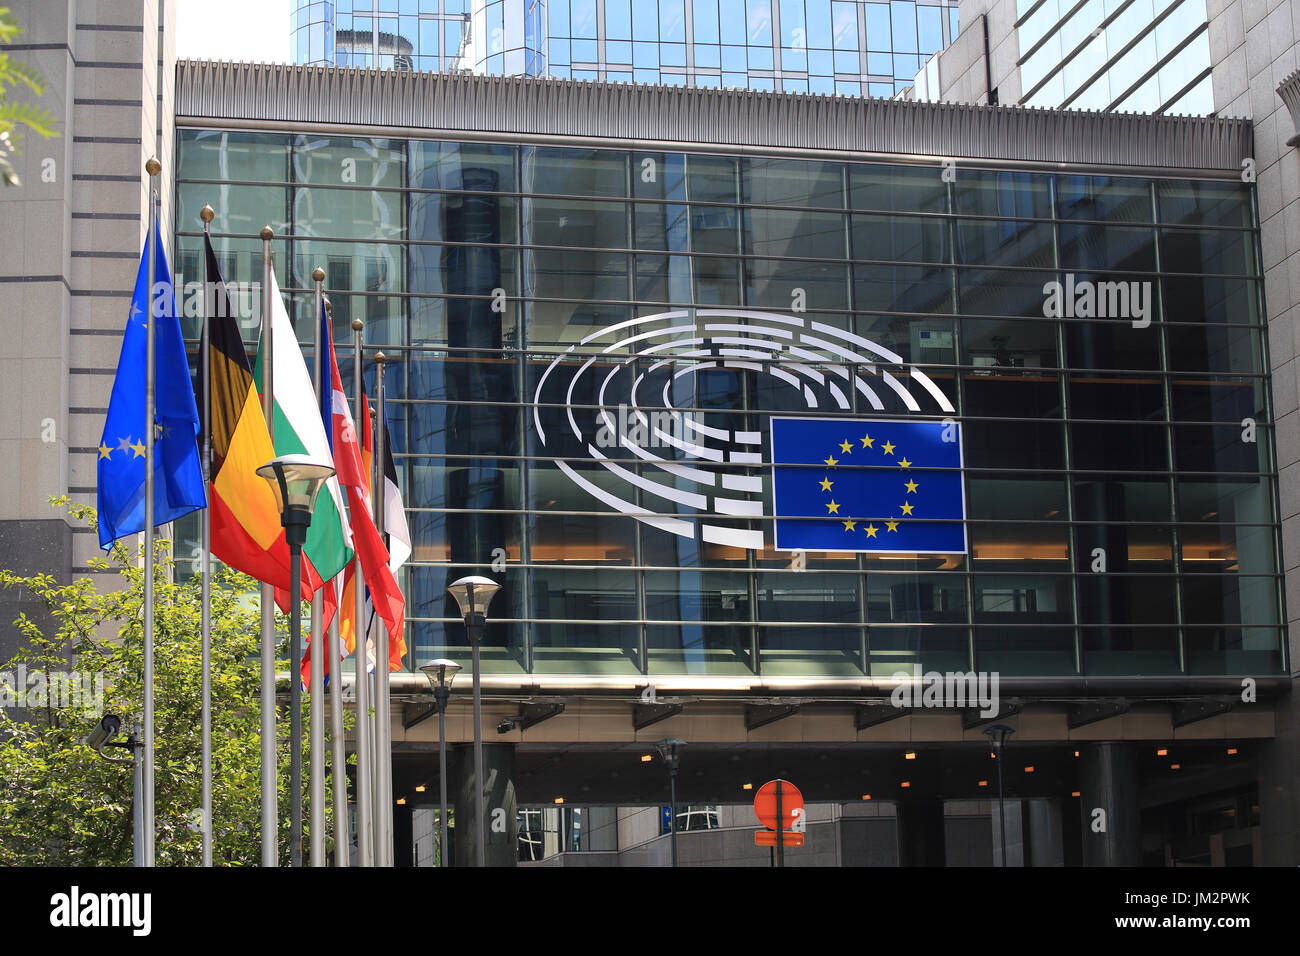 Bruxelles, Belgique - 17 juillet 2017 : lors d'une journée ensoleillée. Emblème de la Commission au Parlement européen et les pays de l'UE des drapeaux. Banque D'Images